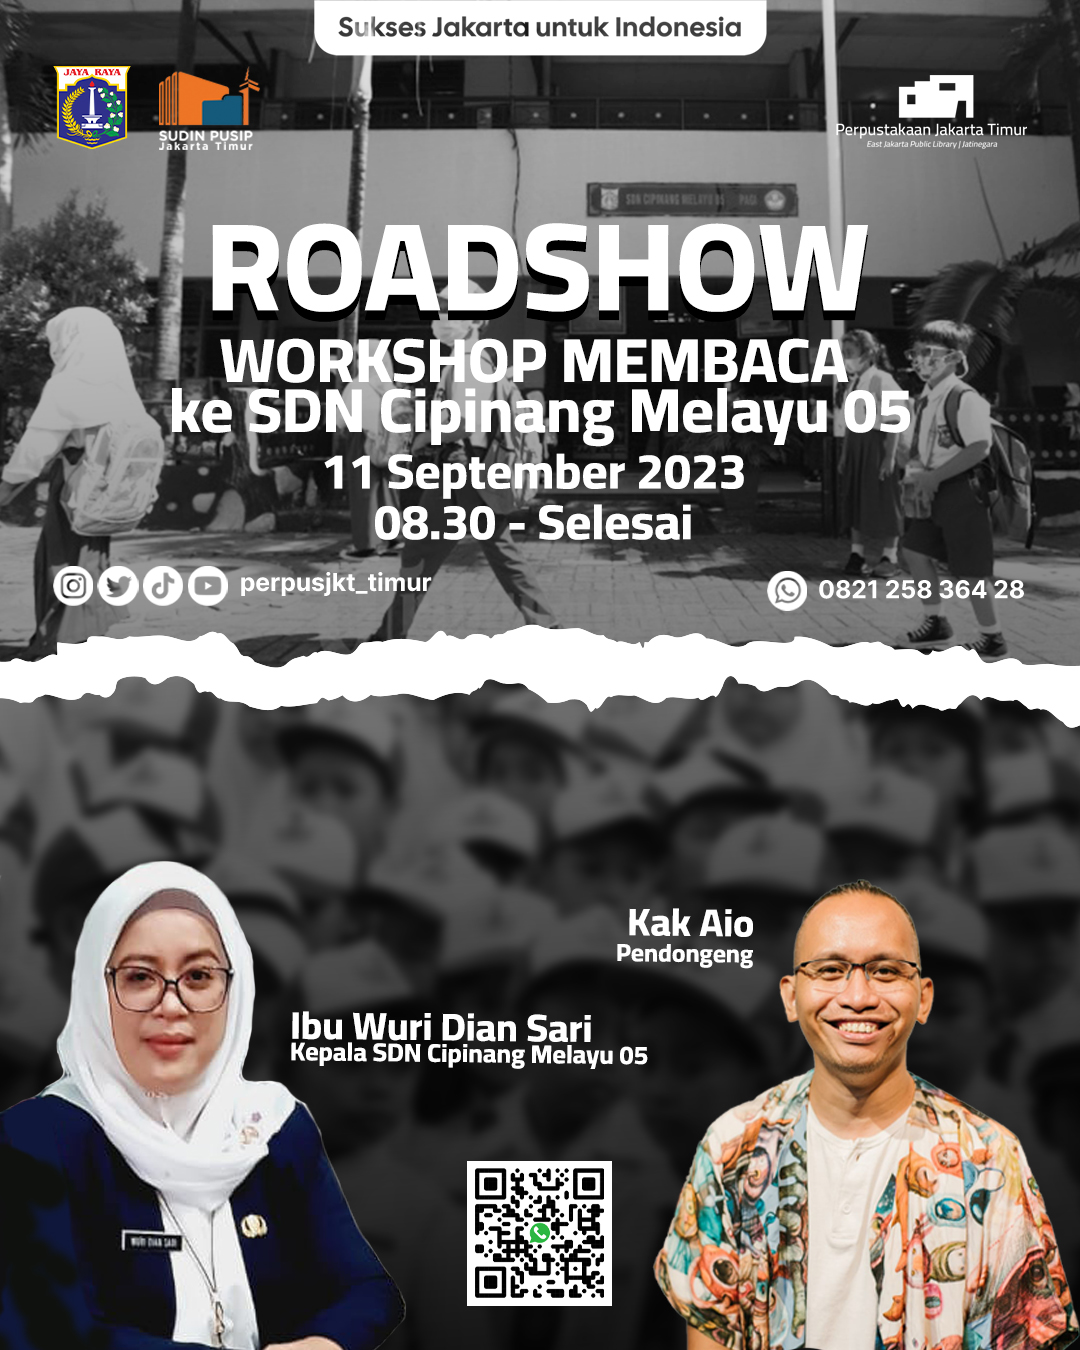 Roadshow Workshop Membaca Di SDN Cipinang Melayu 05